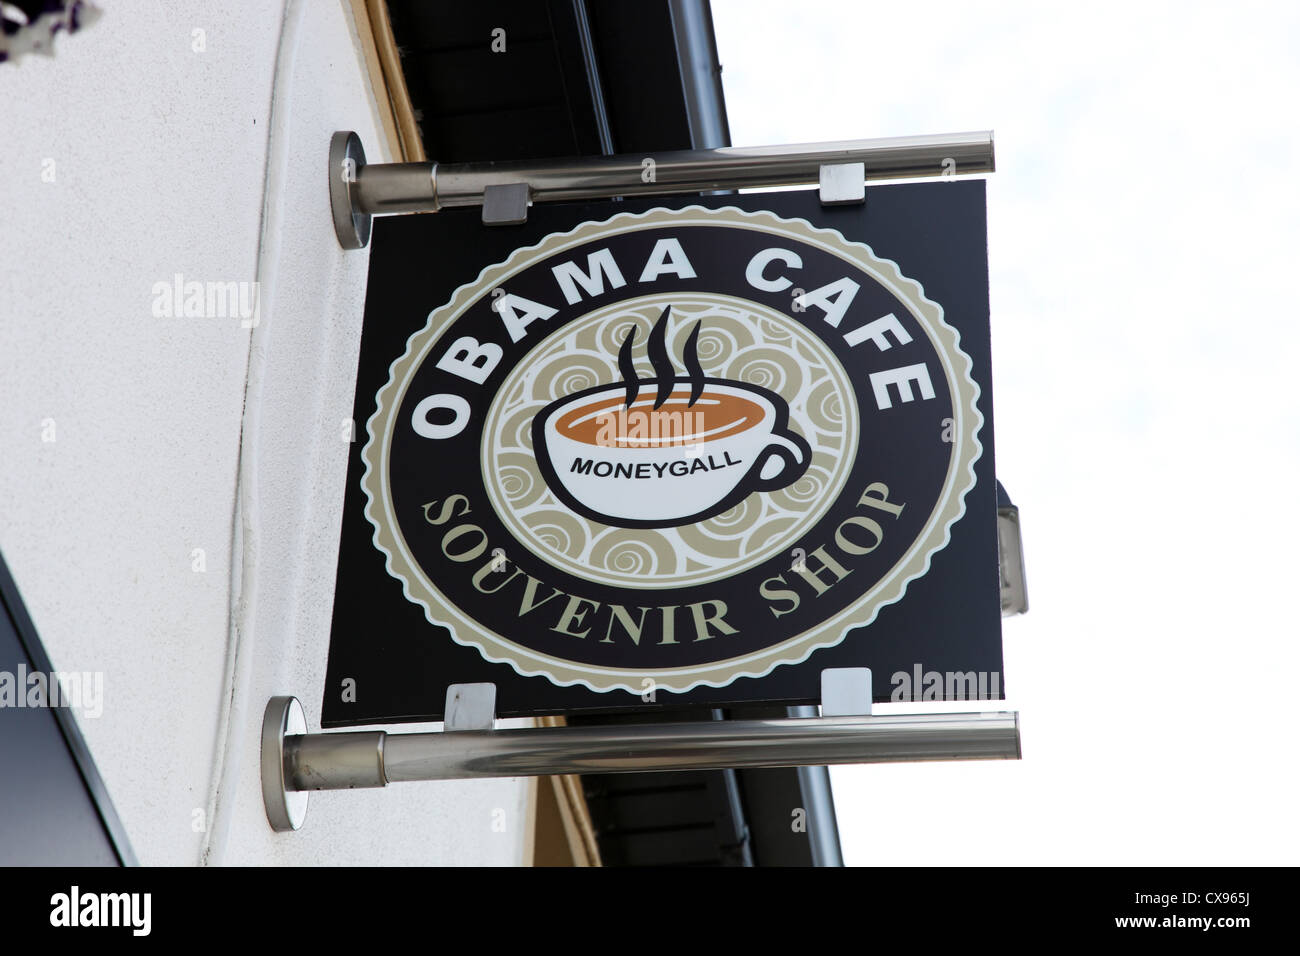 Obama Cafe sign, Moneygall, Ireland Stock Photo